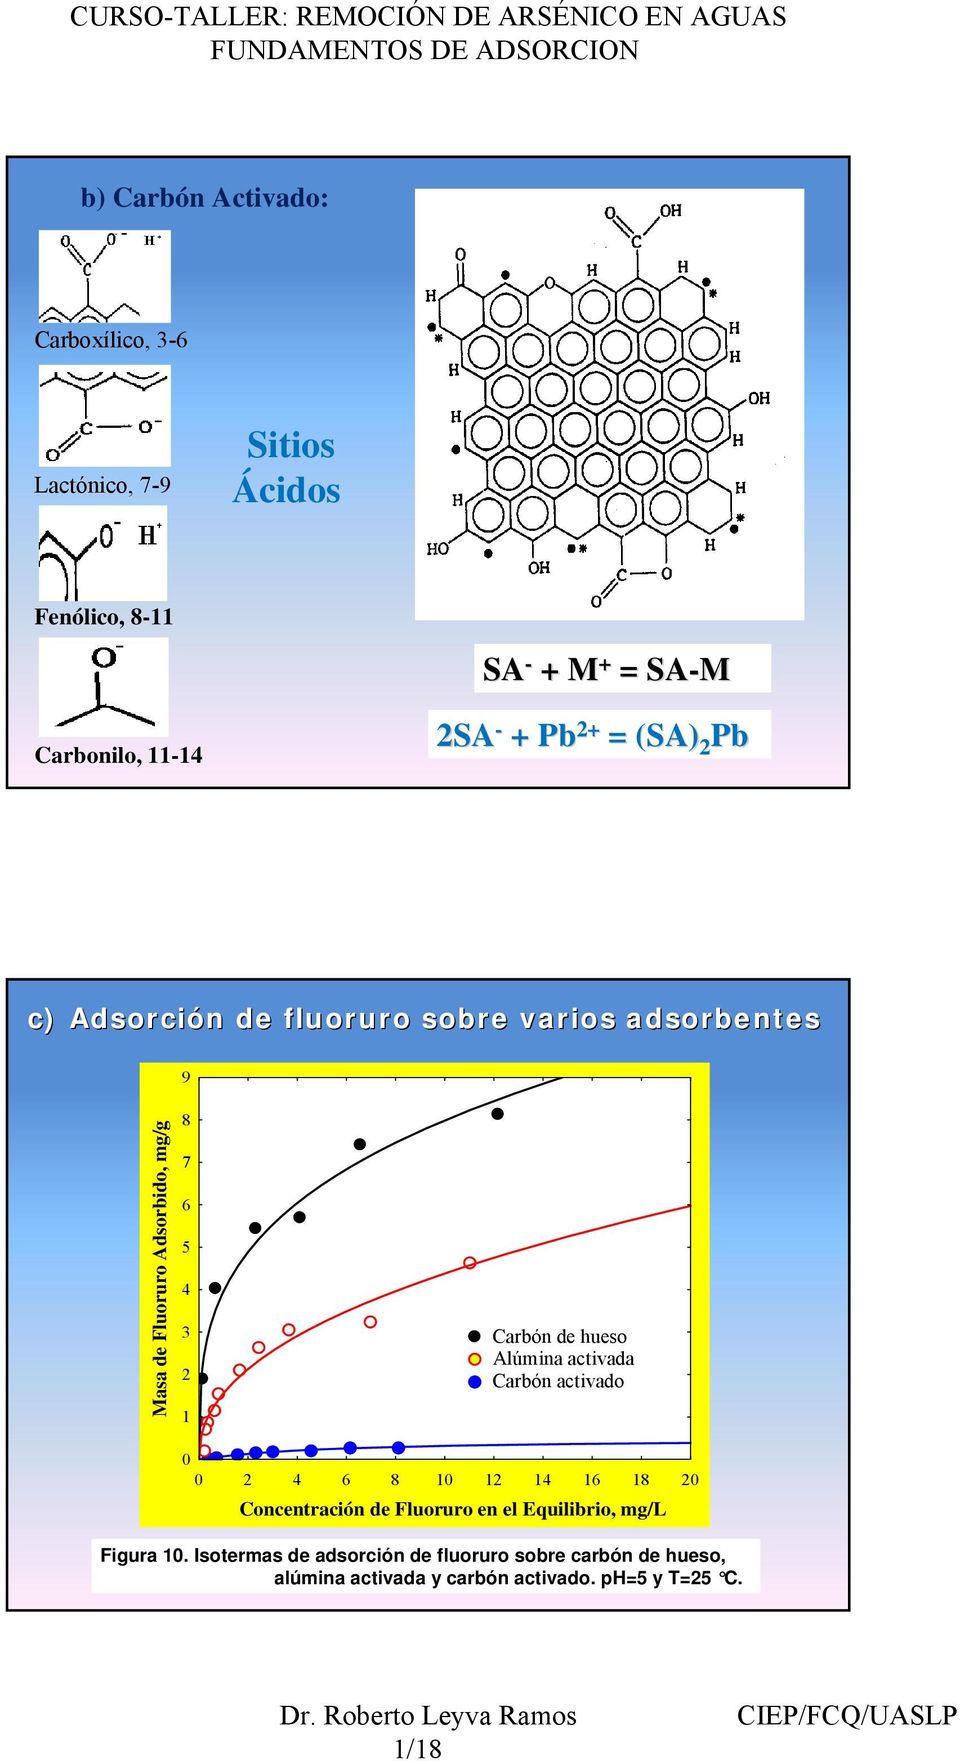 Carbón de hueso Alúmina activada Carbón activado 2 4 6 8 1 12 14 16 18 2 Concentración de Fluoruro en el Equilibrio,